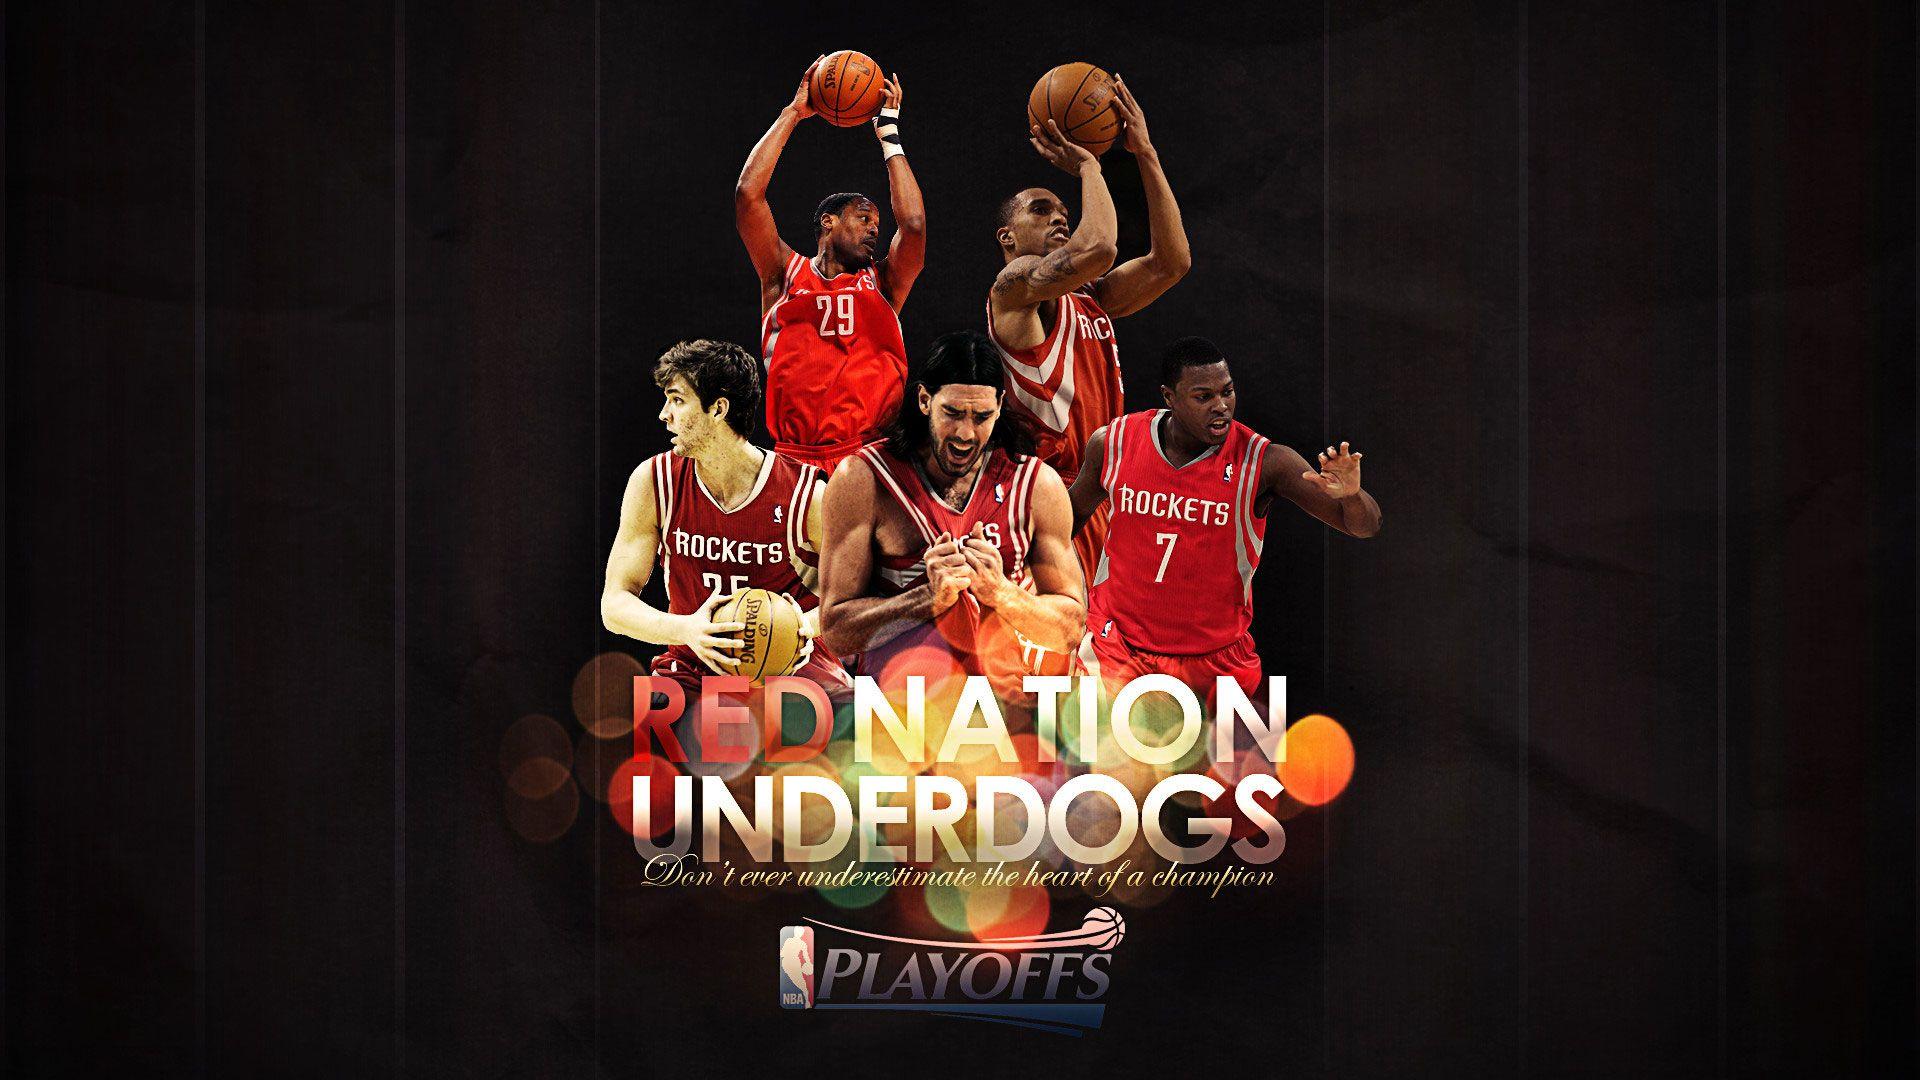 Rockets 2012 Playoffs 1920×1080 Wallpaper. Basketball Wallpaper